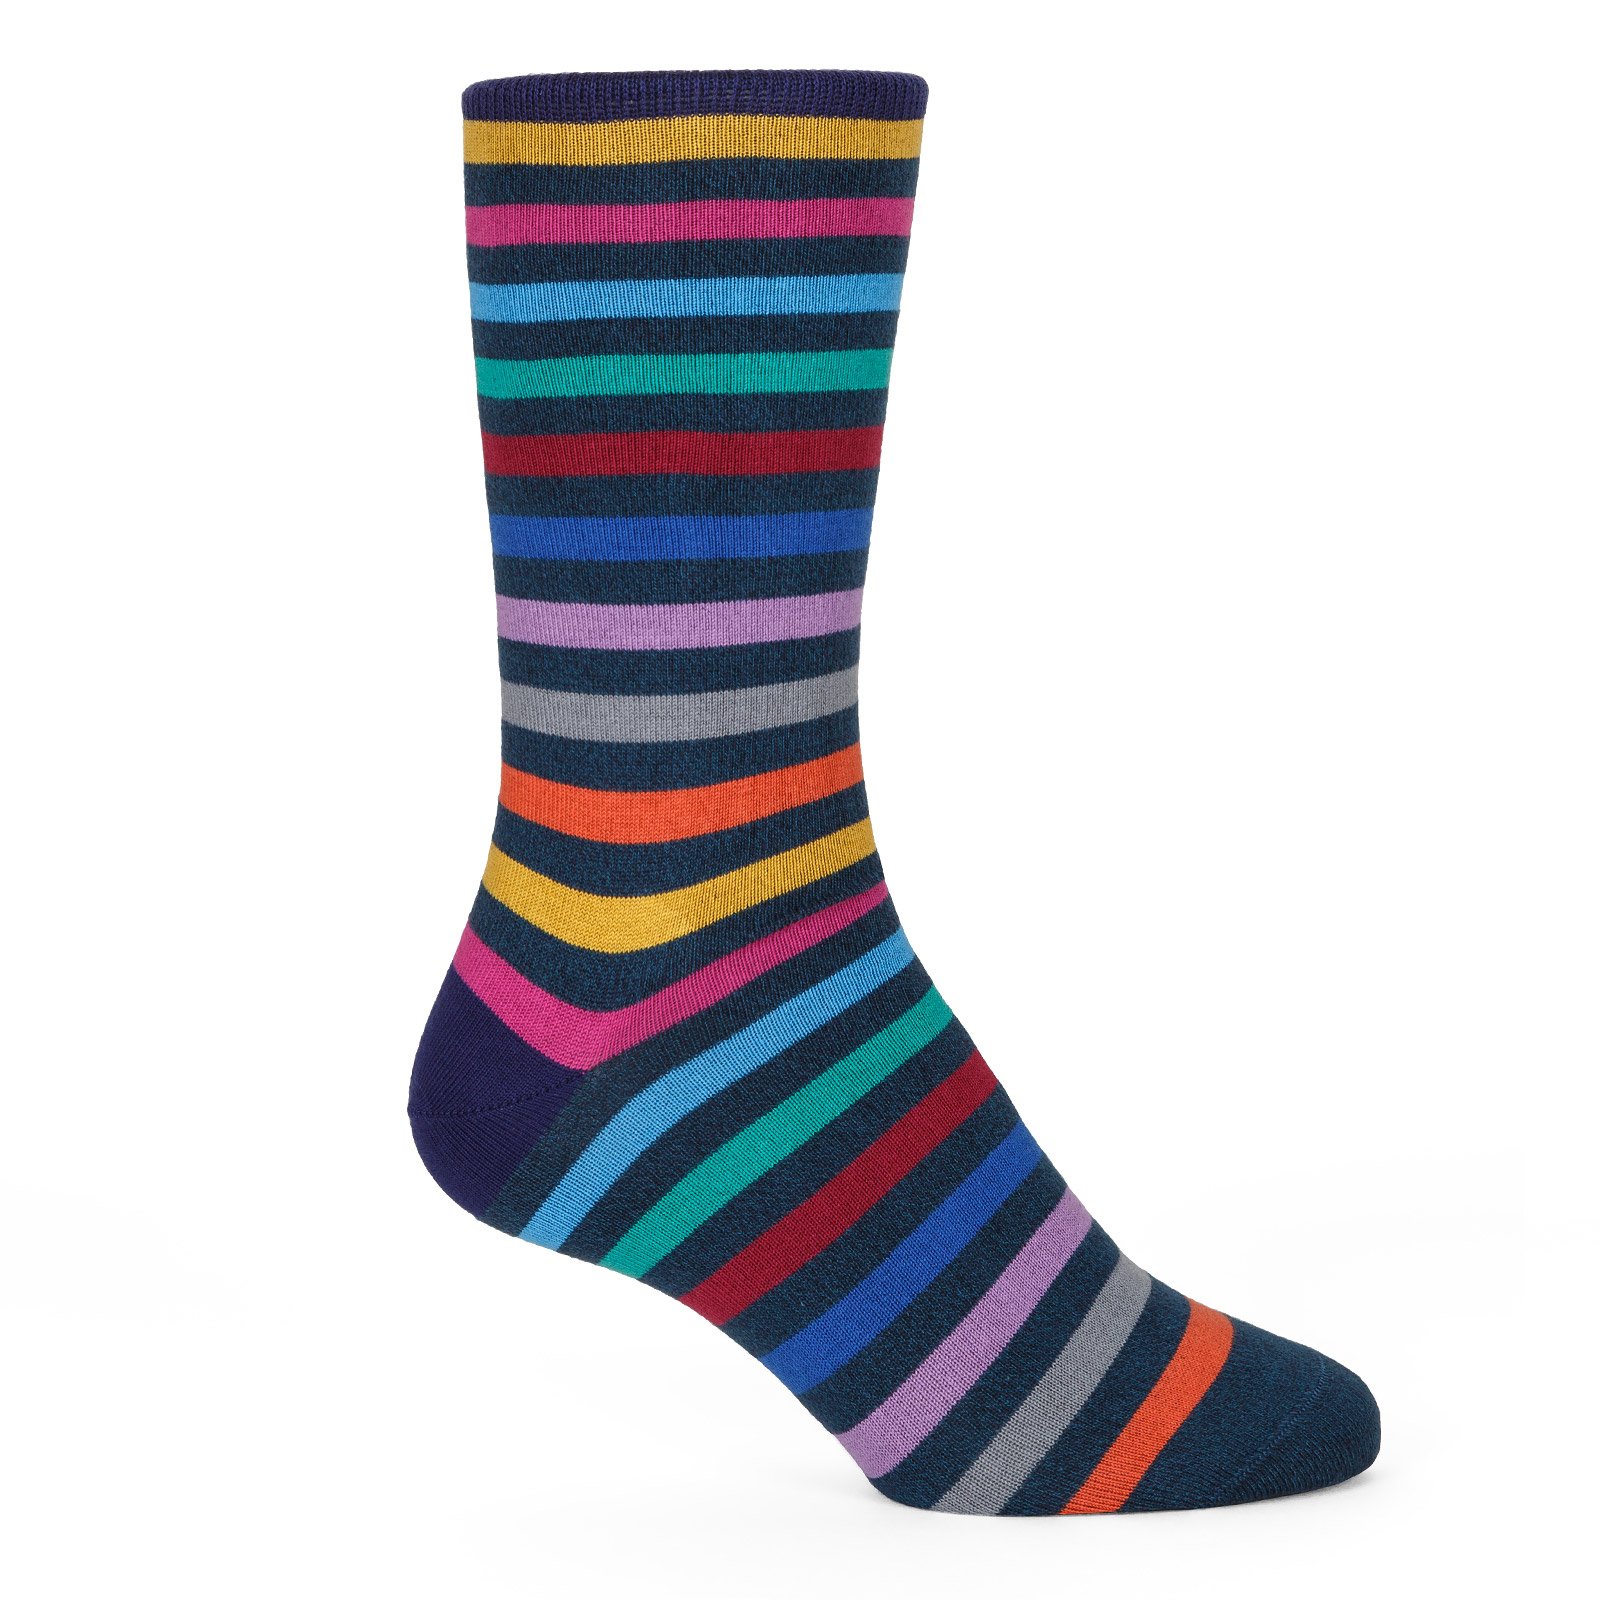 Twisted Stripe Socks - New Online : Fifth Avenue Menswear - PAUL SMITH ...